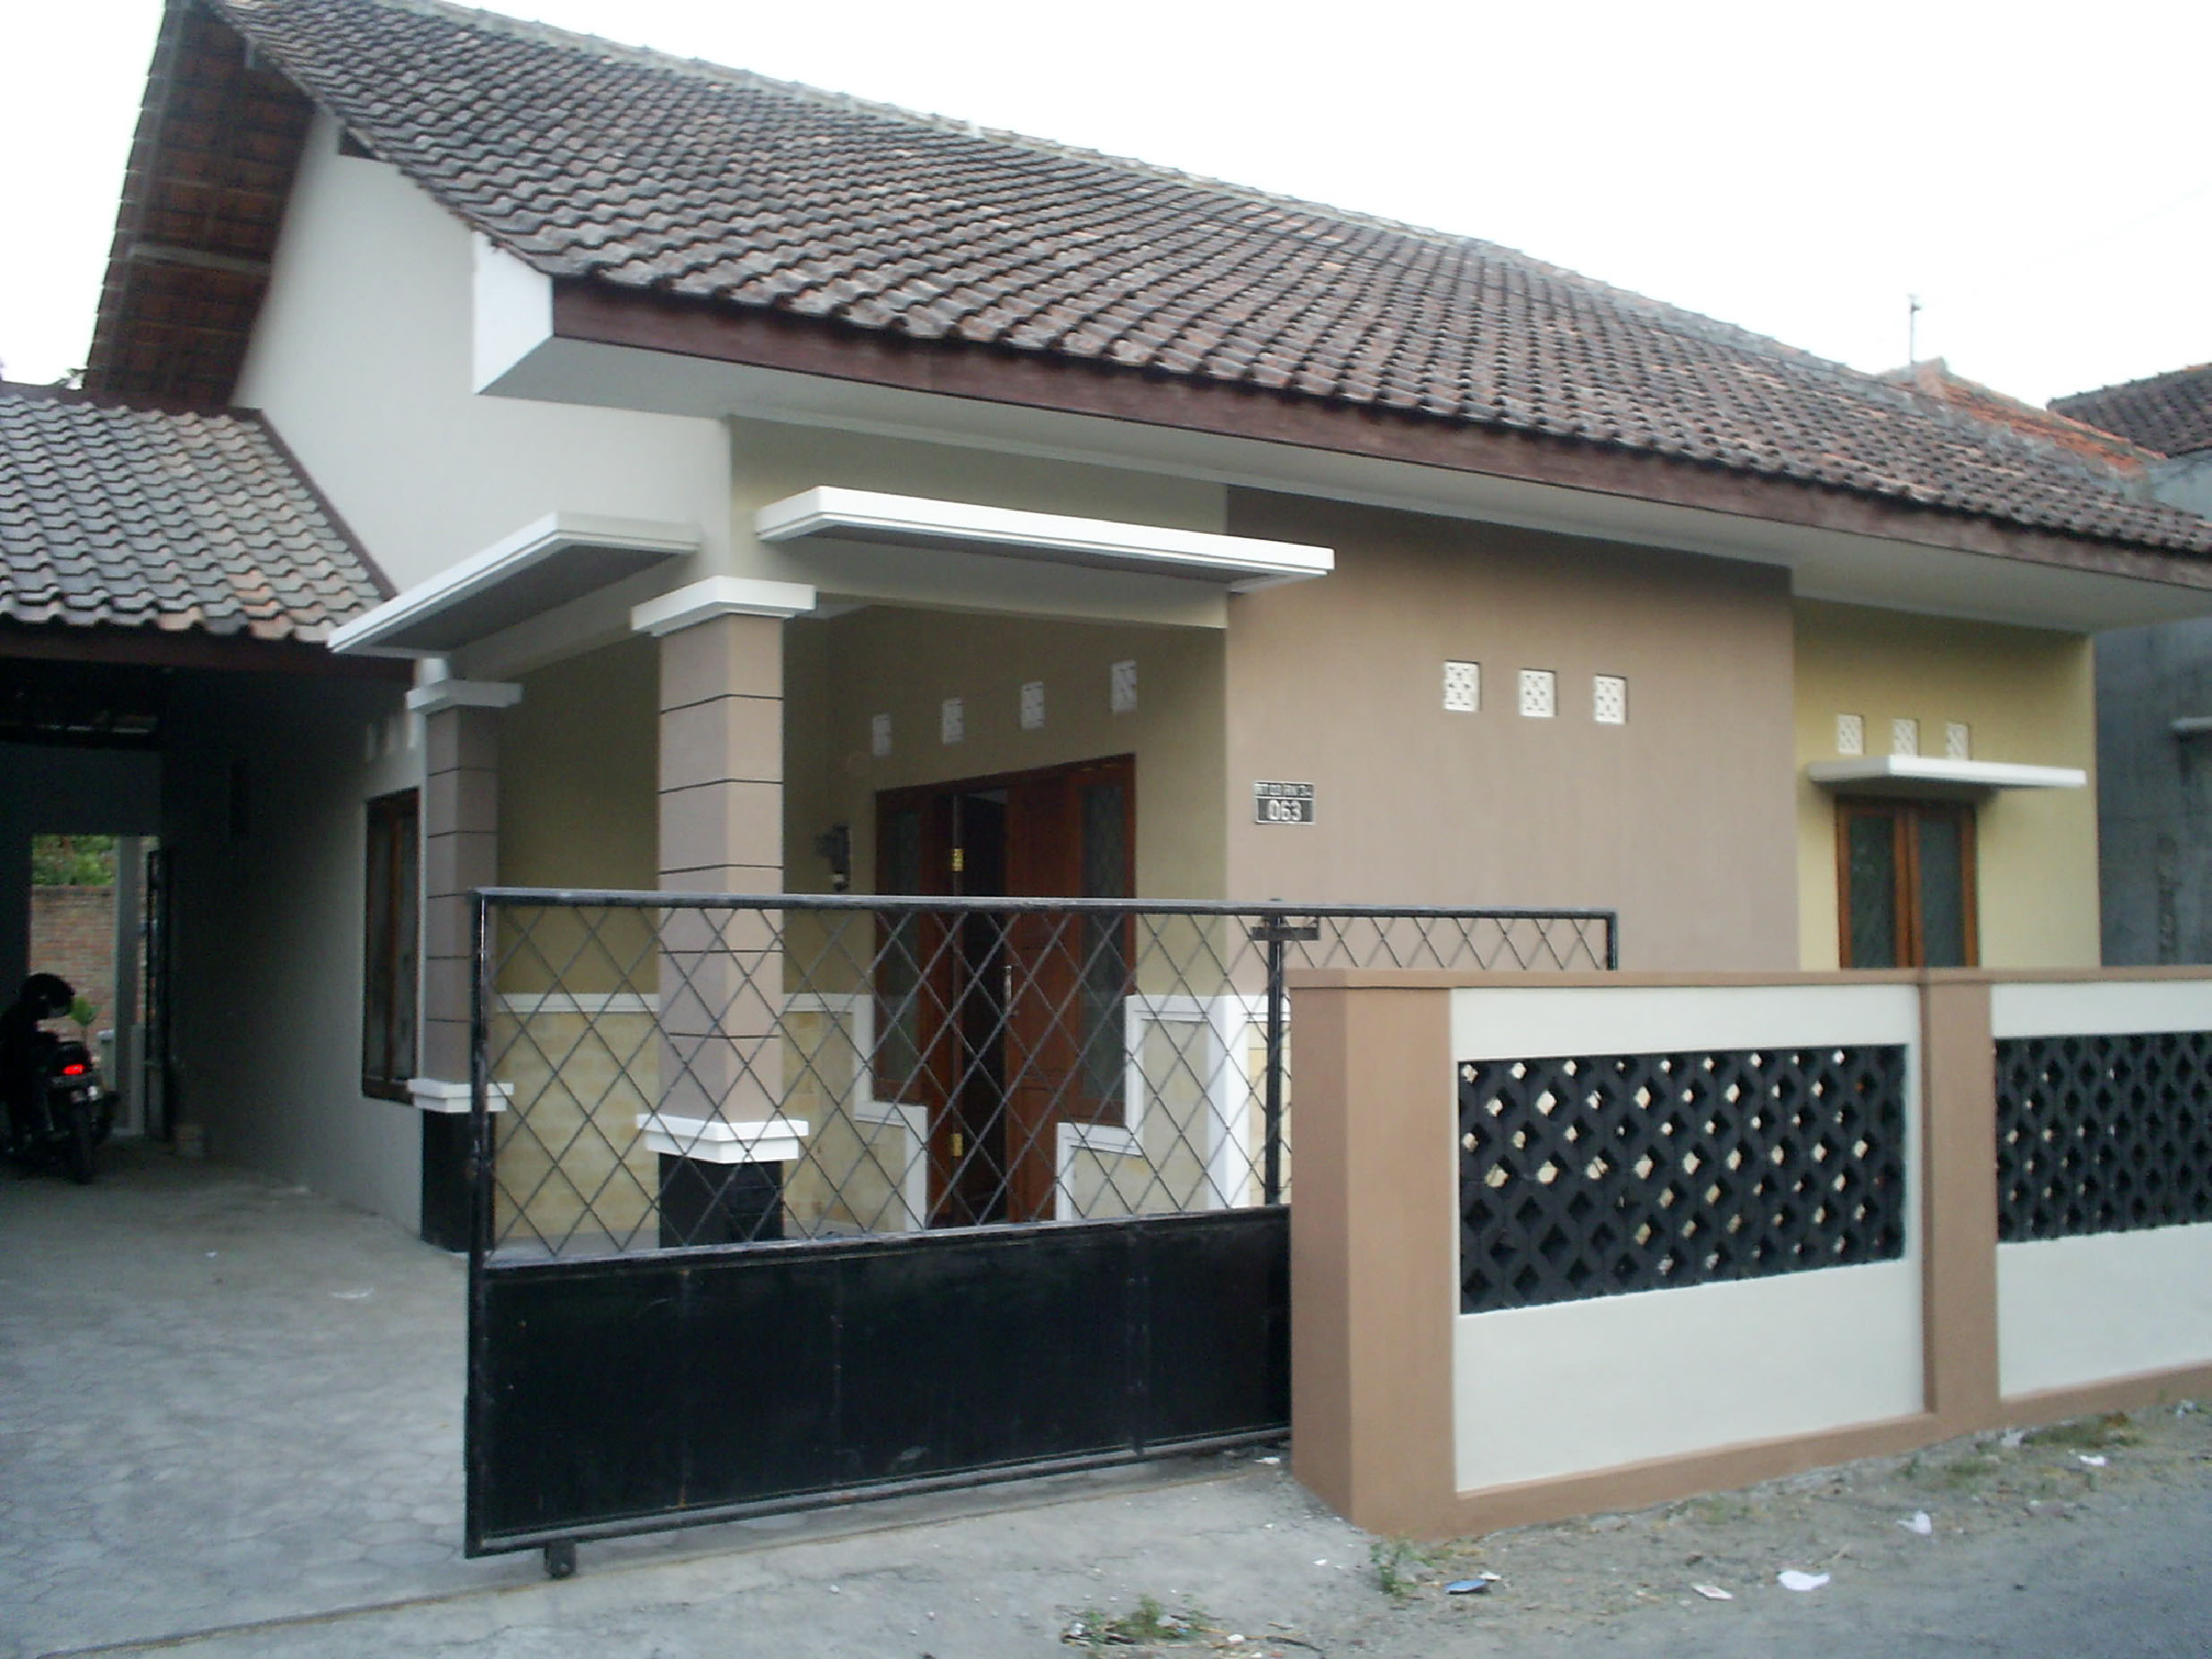 Pembangunan Rumah Tinggal Tipe 100 Milik Bpk Elo. Tahun 2007, Lokasi ...